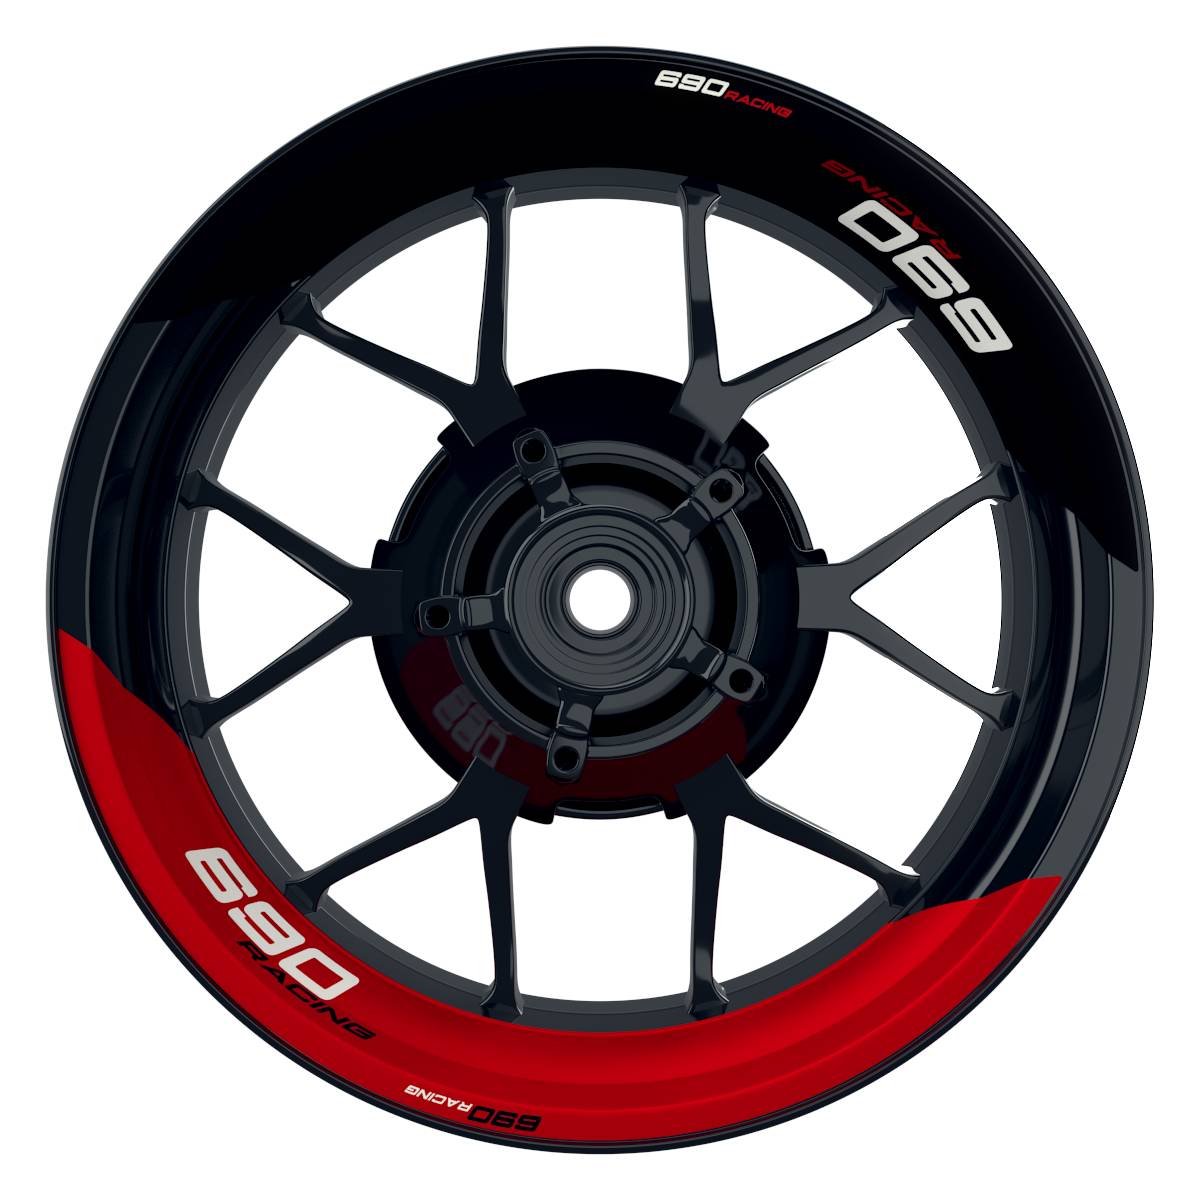 KTM Racing 690 halb halb schwarz rot Frontansicht